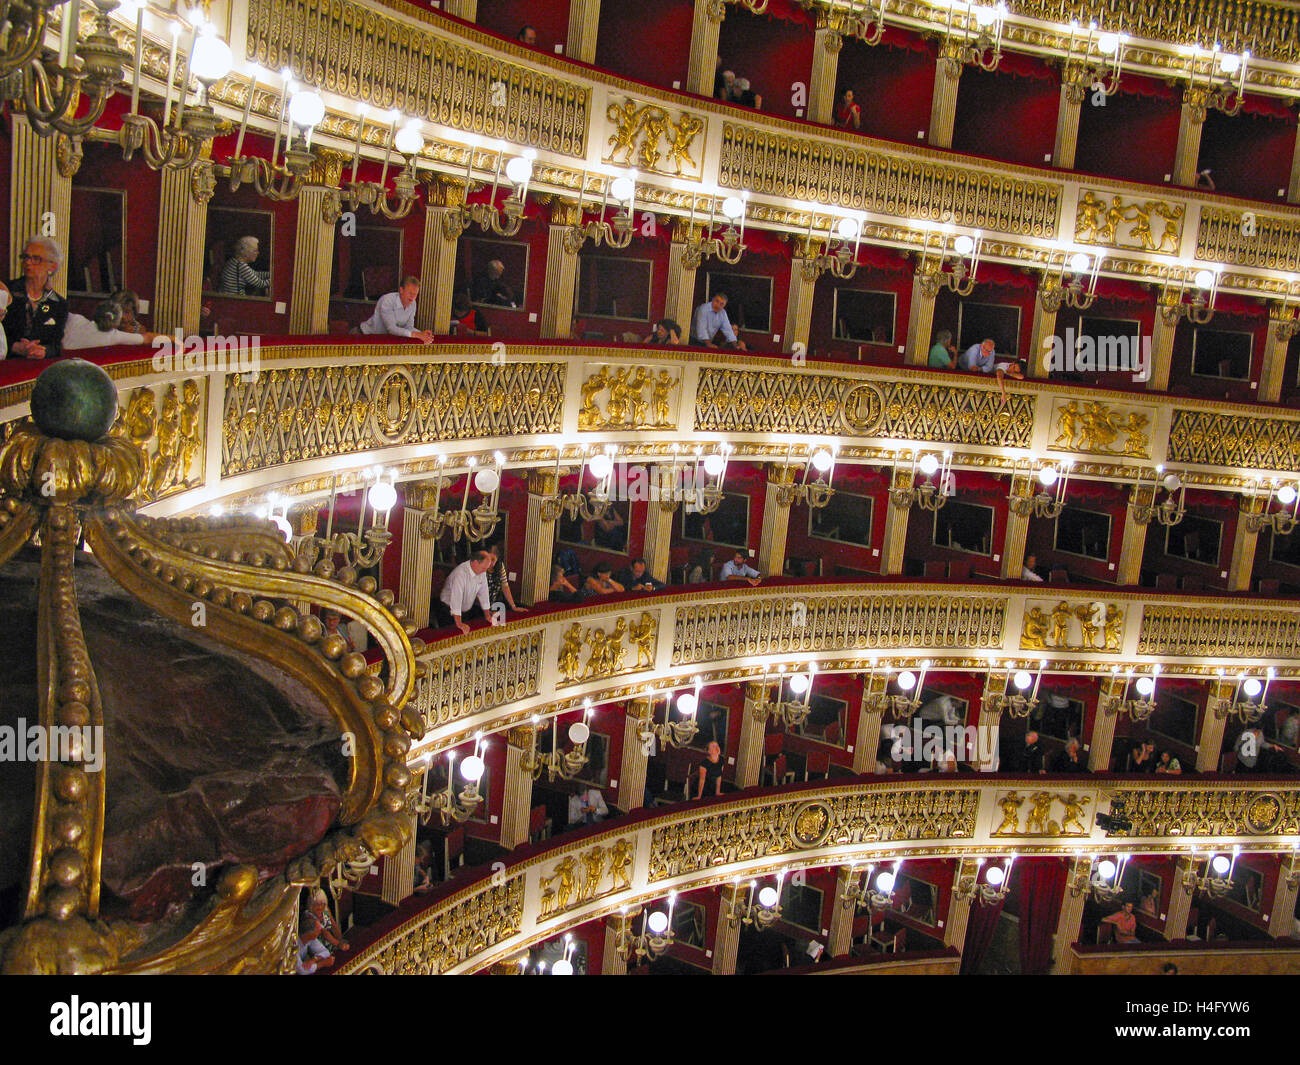 Les boîtes dans le Teatro di San Carlo (Théâtre Royal de Saint Charles) Opéra, Naples, au cours de l'intervalle Banque D'Images